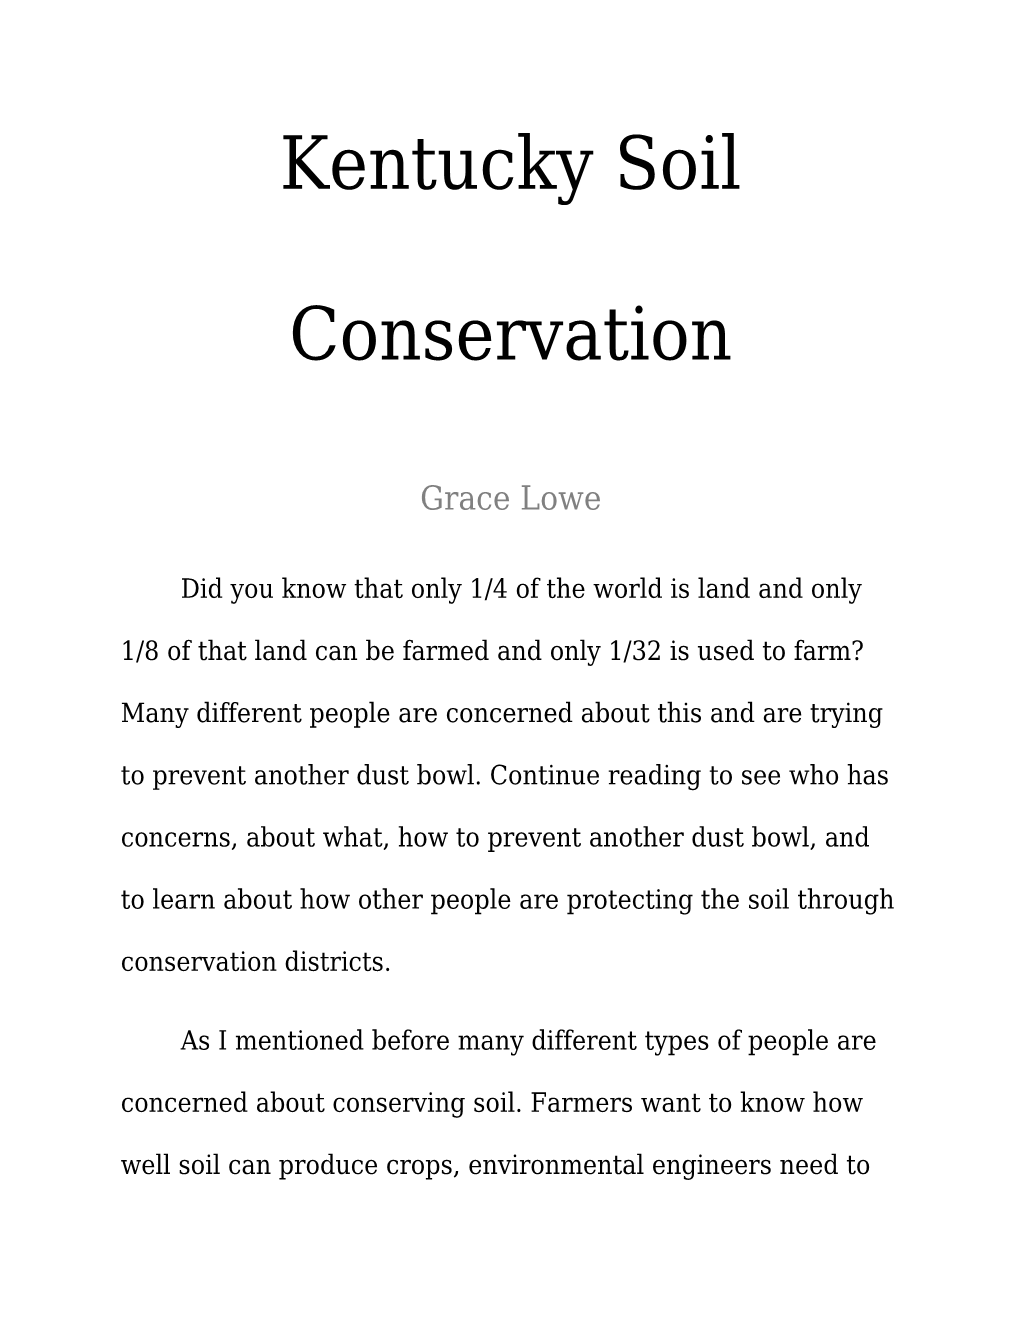 Kentucky Soil Conservation